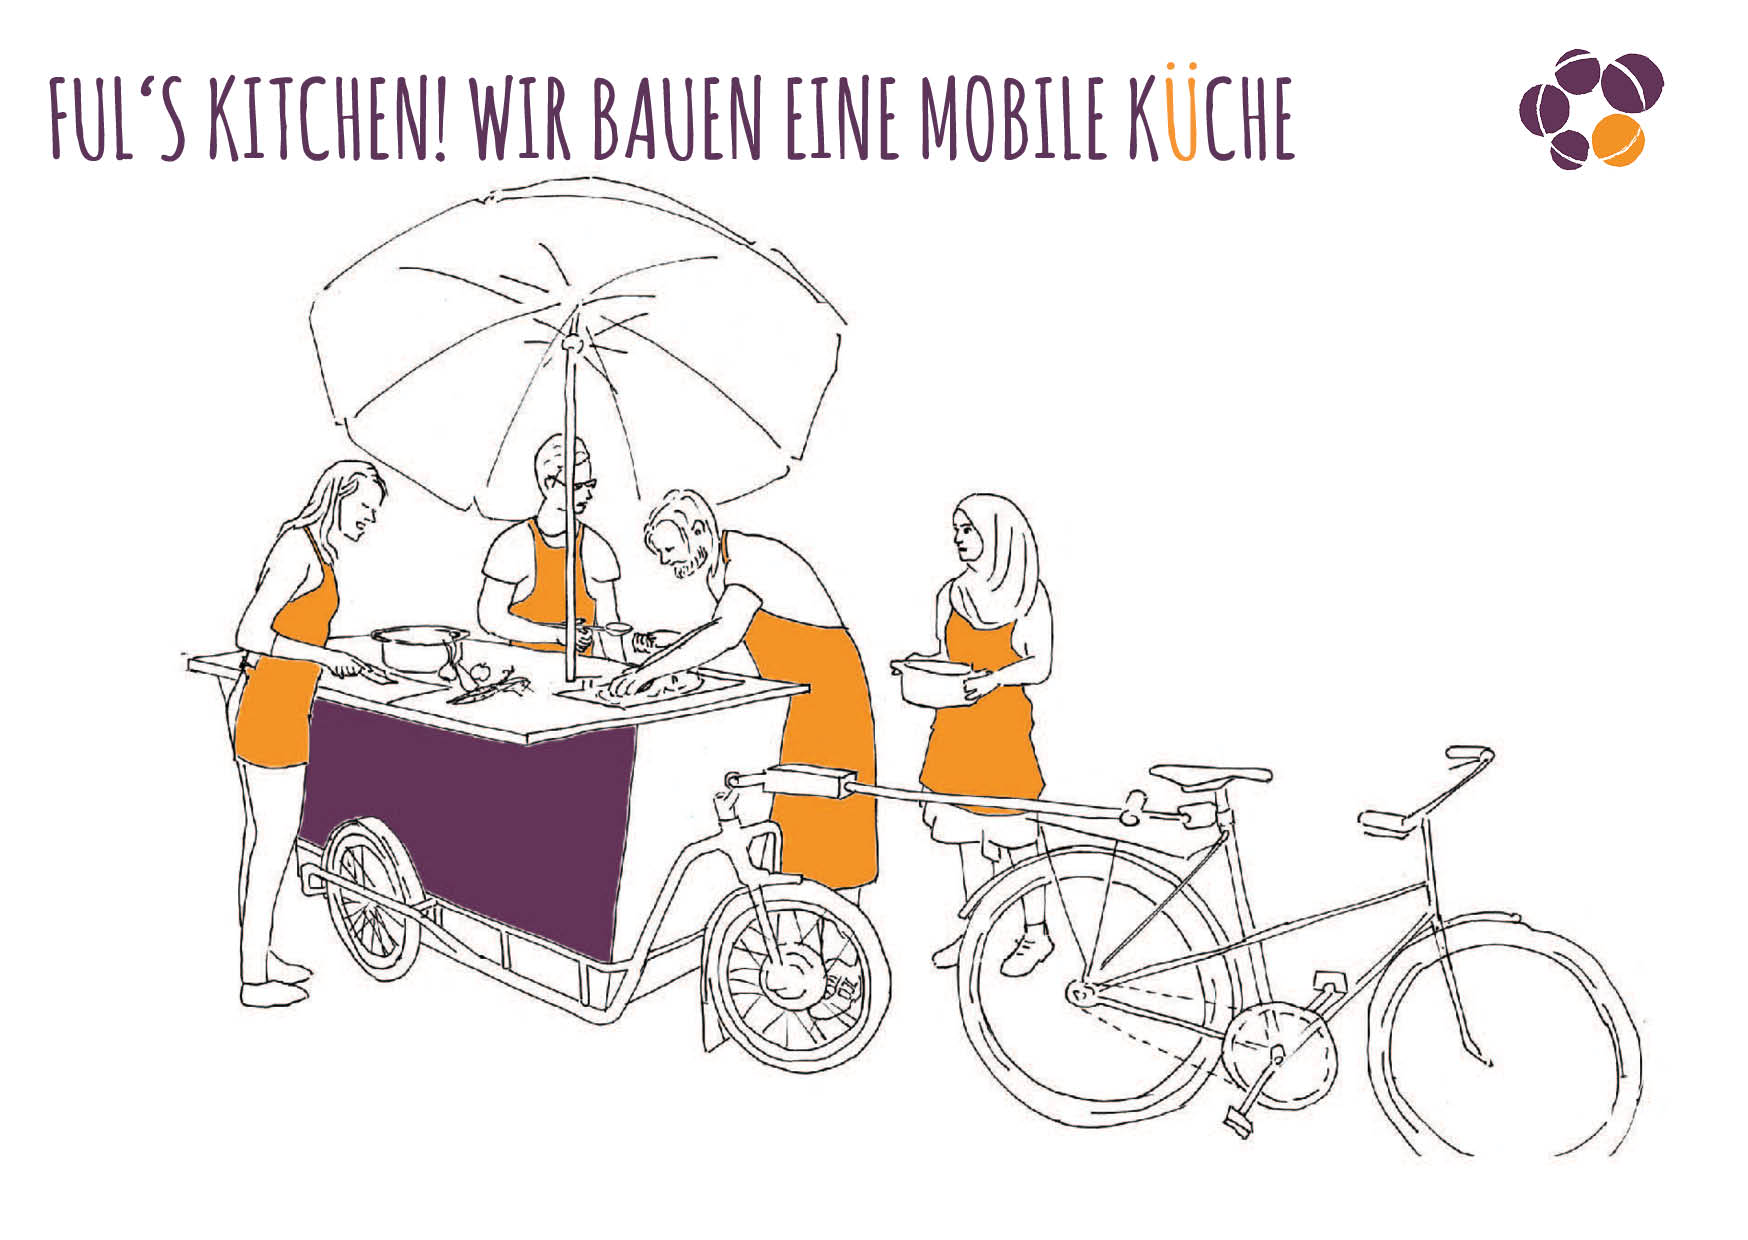 Eine Zeichnung, auf der vier Personen mit Schürzen um ein Fahrrad mit Anhänger stehen. Sie haben Geschirr in der Hand.